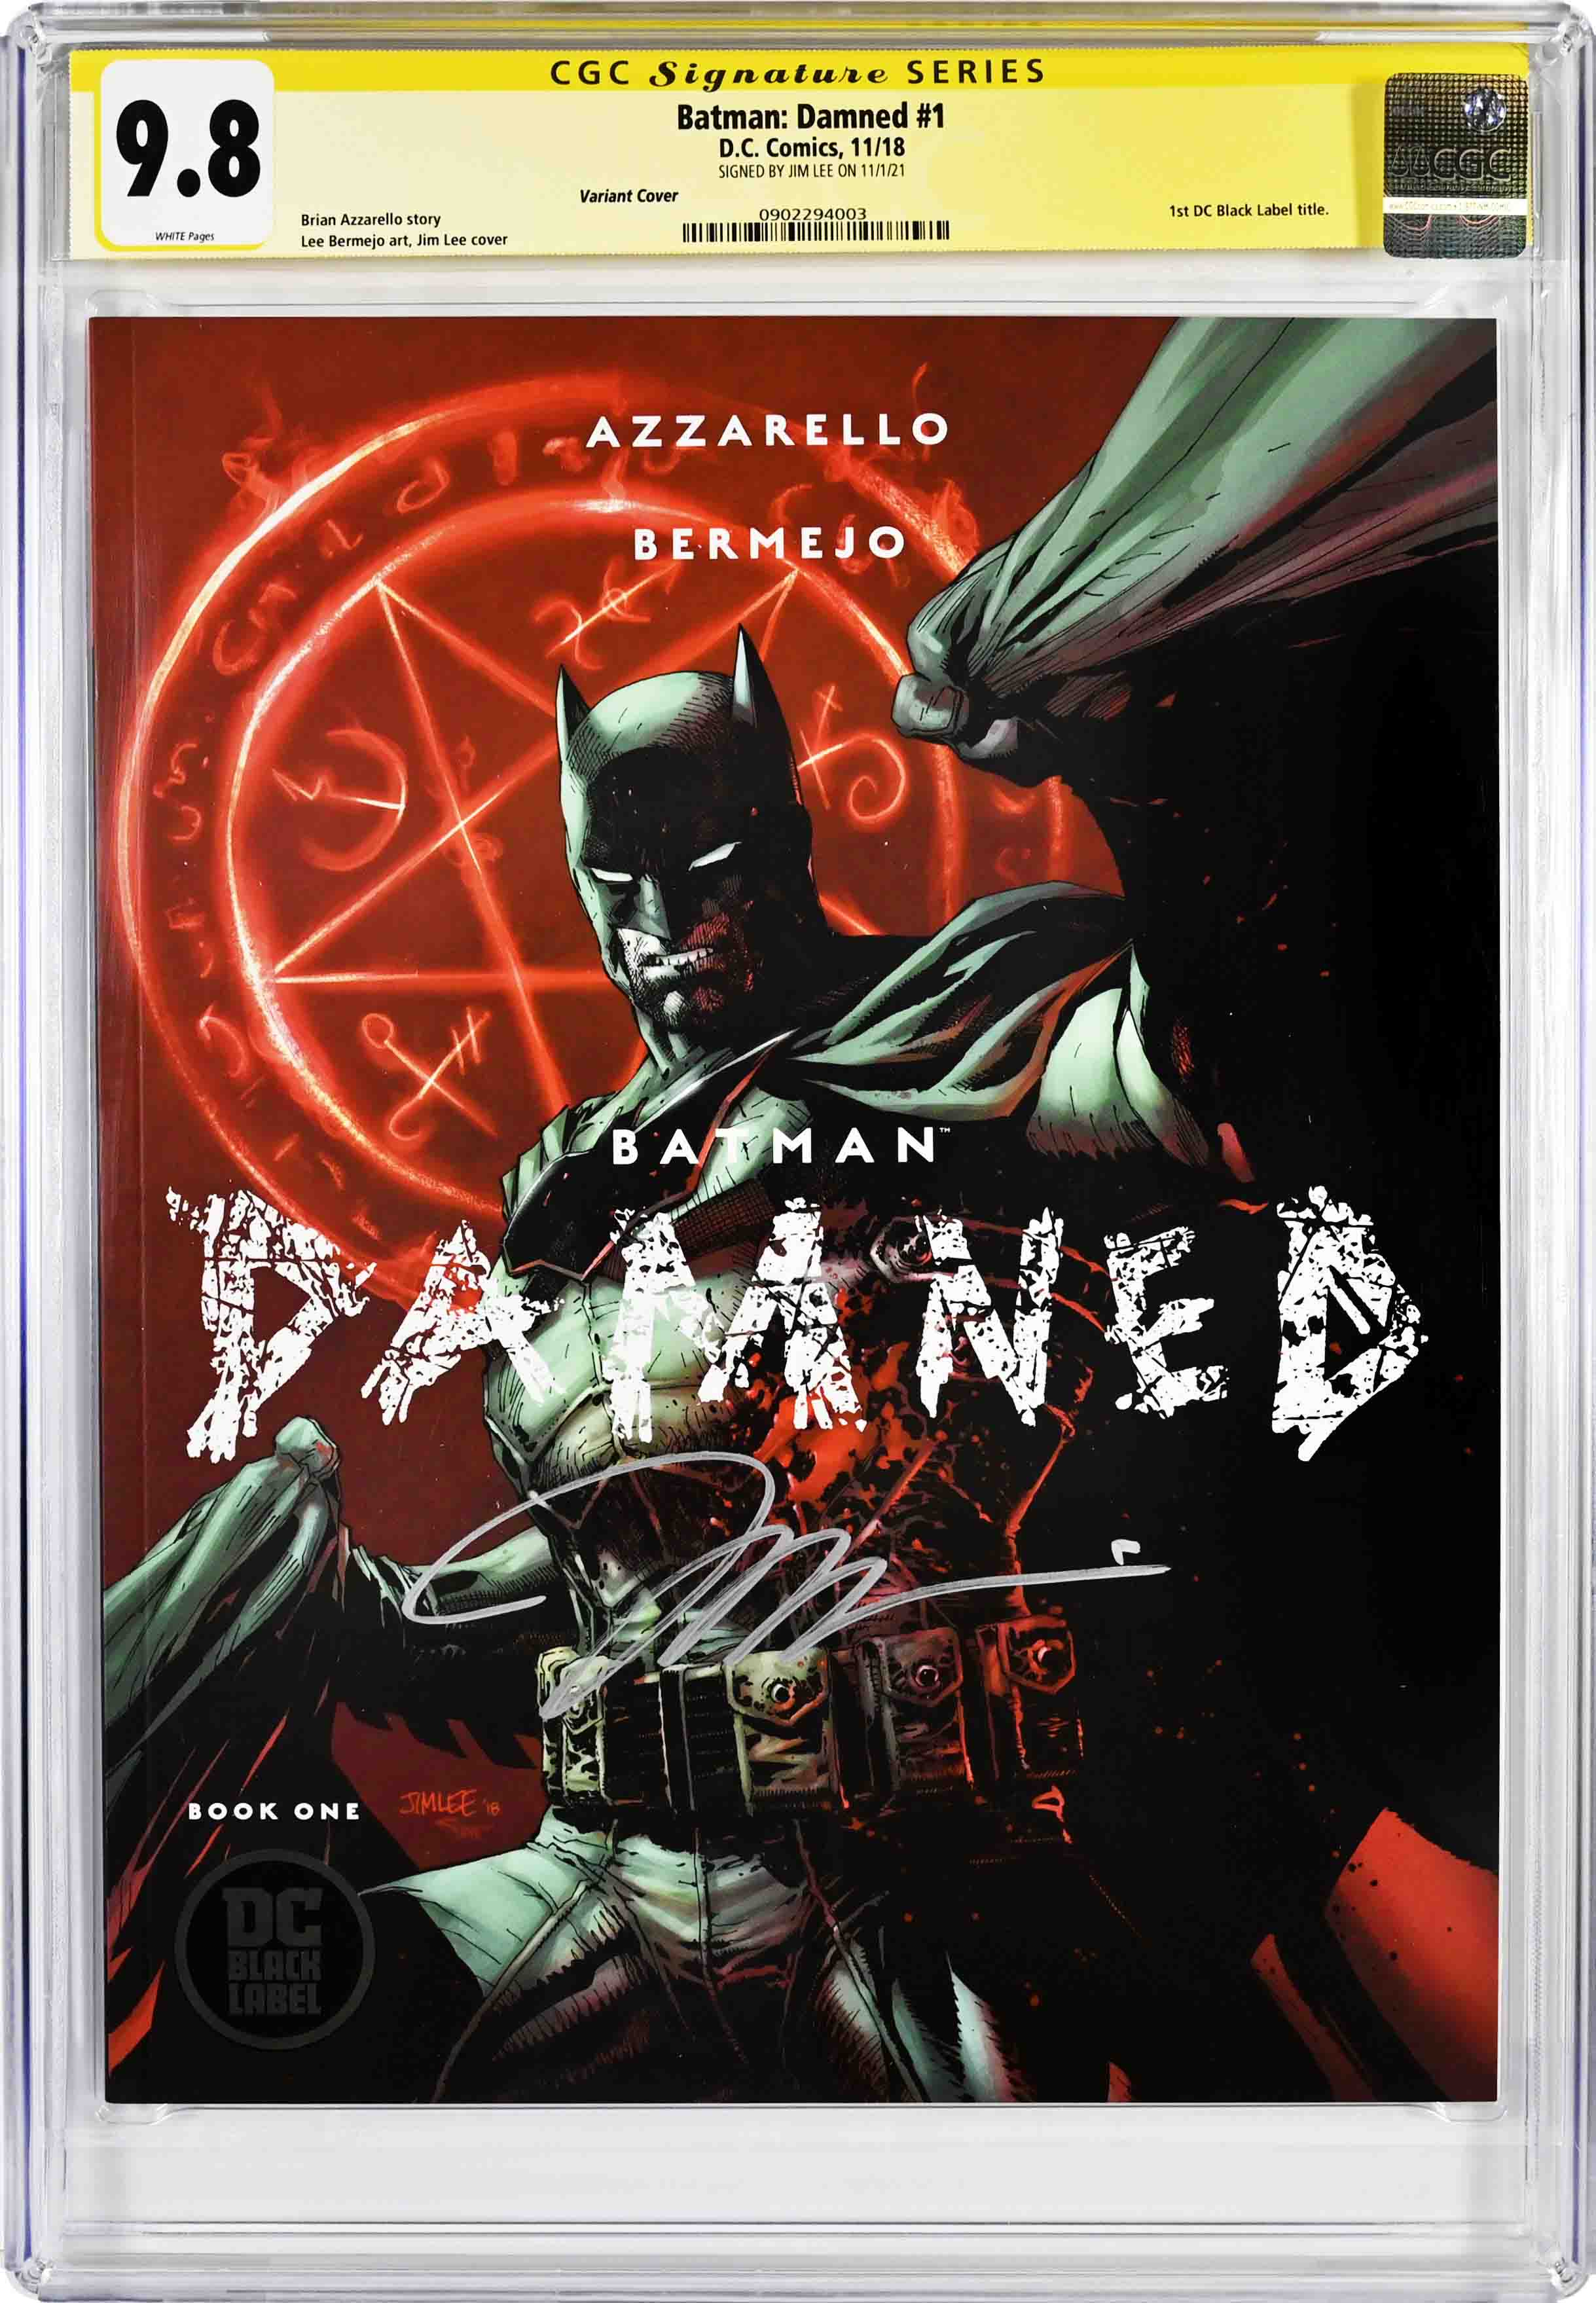 BATMAN: DAMNED Books 1-3 (Uncensored) by AZZARELLO & BERMEJO - 1st Printing  